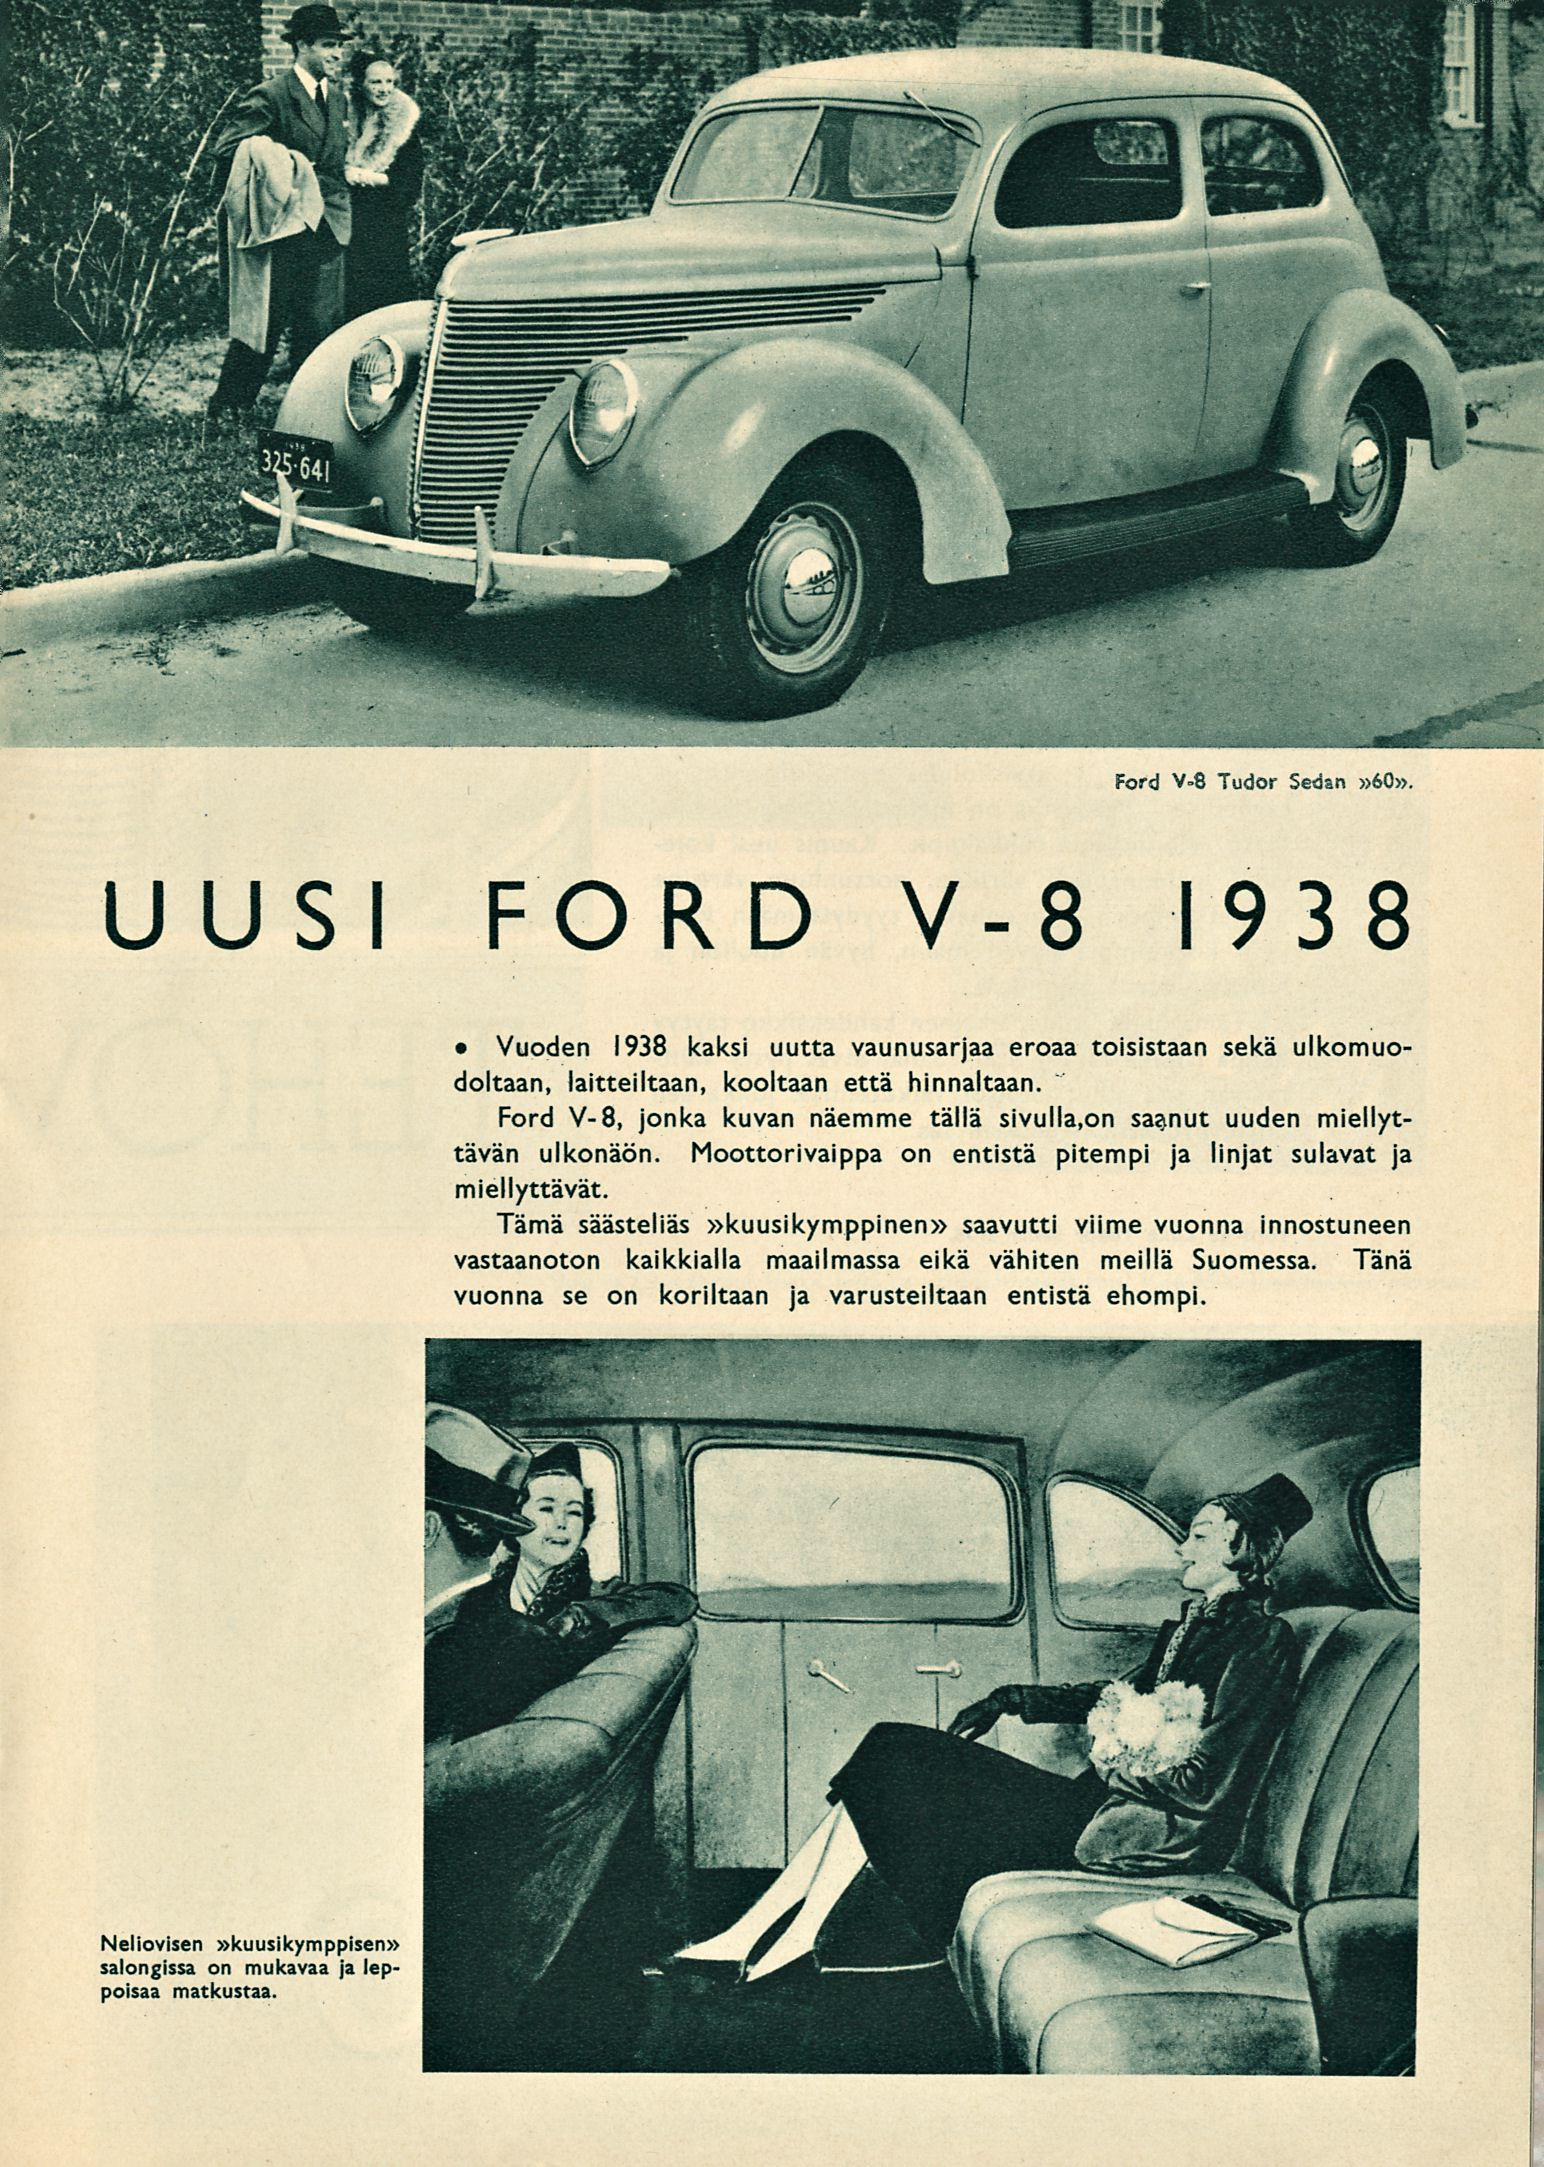 Ford V-8 Tudor Sedän»60». UUSI FORD V-8 1938 Vuoden 1938 kaksi uutta vaunusarjaa eroaa toisistaan sekä ulkomuodoltaan, laitteiltaan, kooltaan että hinnaltaan.